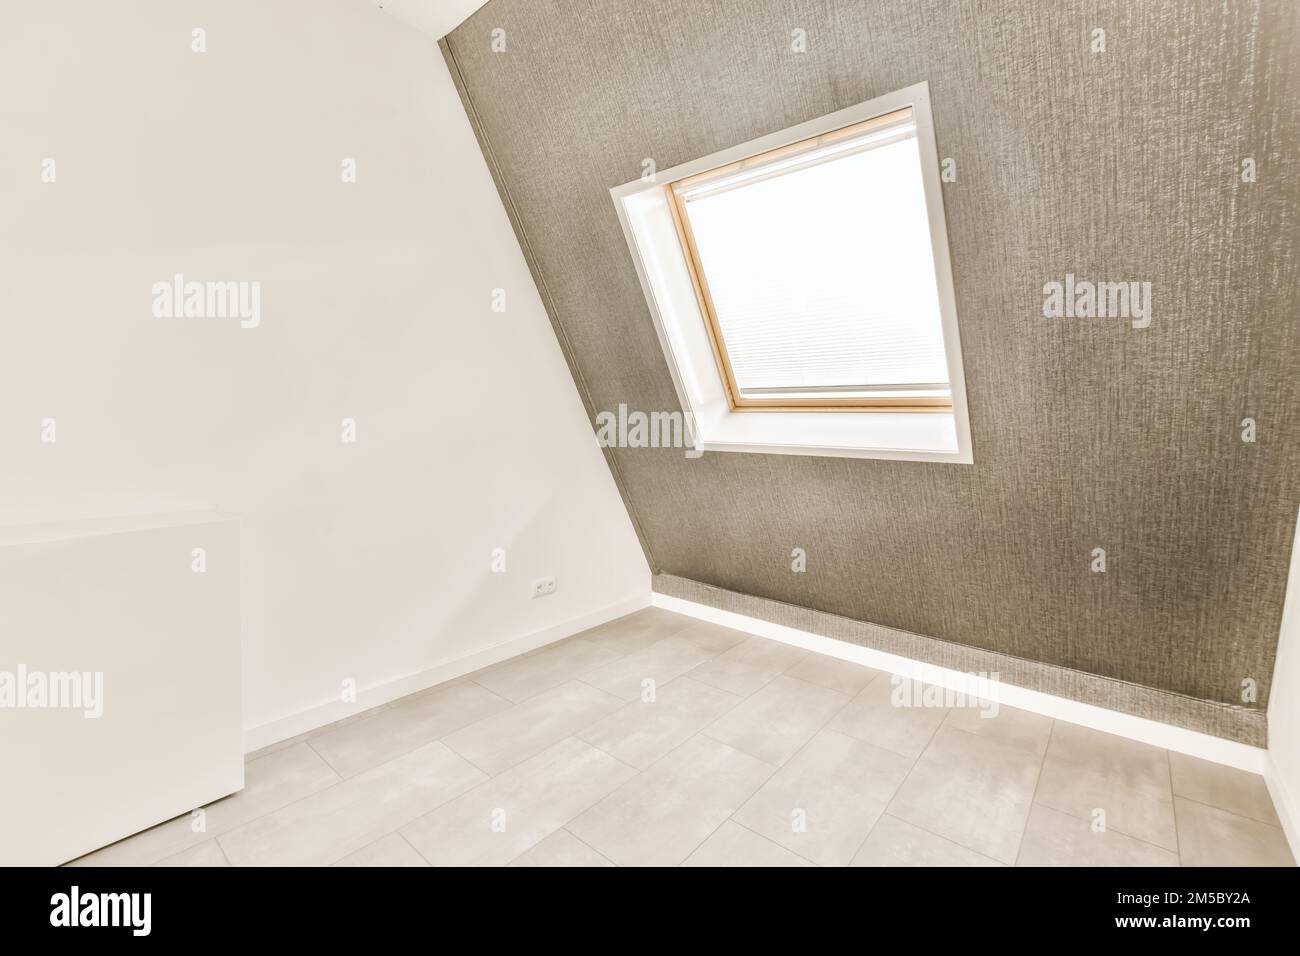 une pièce vide avec un sol carrelé et des murs blancs dans le mur n'est pas visible, mais il n'y a pas d'image Banque D'Images